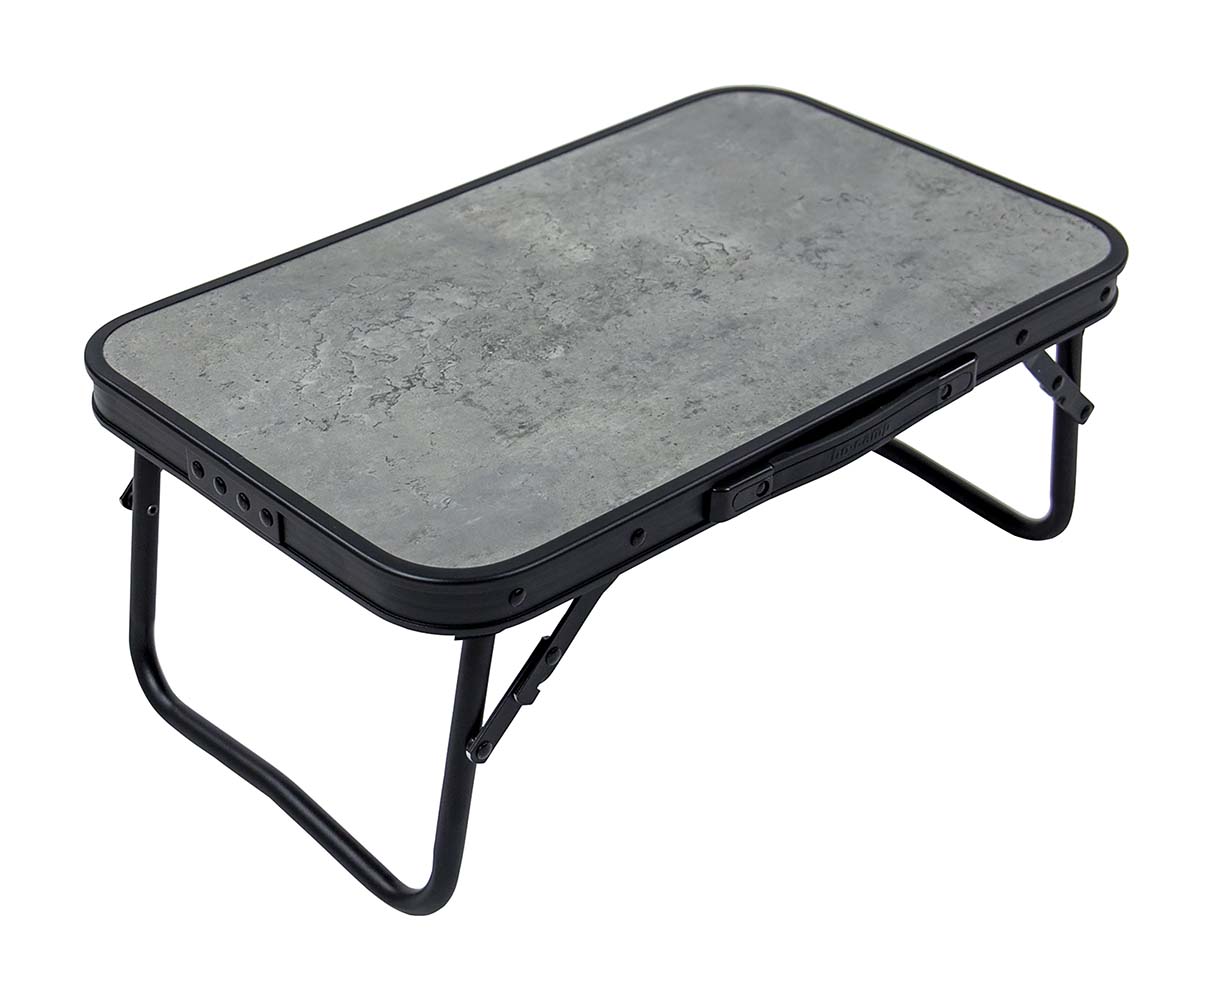 1404180 Ein stilvoller Klapptisch aus Aluminium im Industrie-Look mit einer Tischplatte in Betonoptik. Der Tisch ist dank der klappbaren Beine sehr kompakt zu verstauen. Darüber hinaus ist der Tisch mit einem Netz unter der MDF-Tischplatte ausgestattet, um Gegenstände zu verstauen.